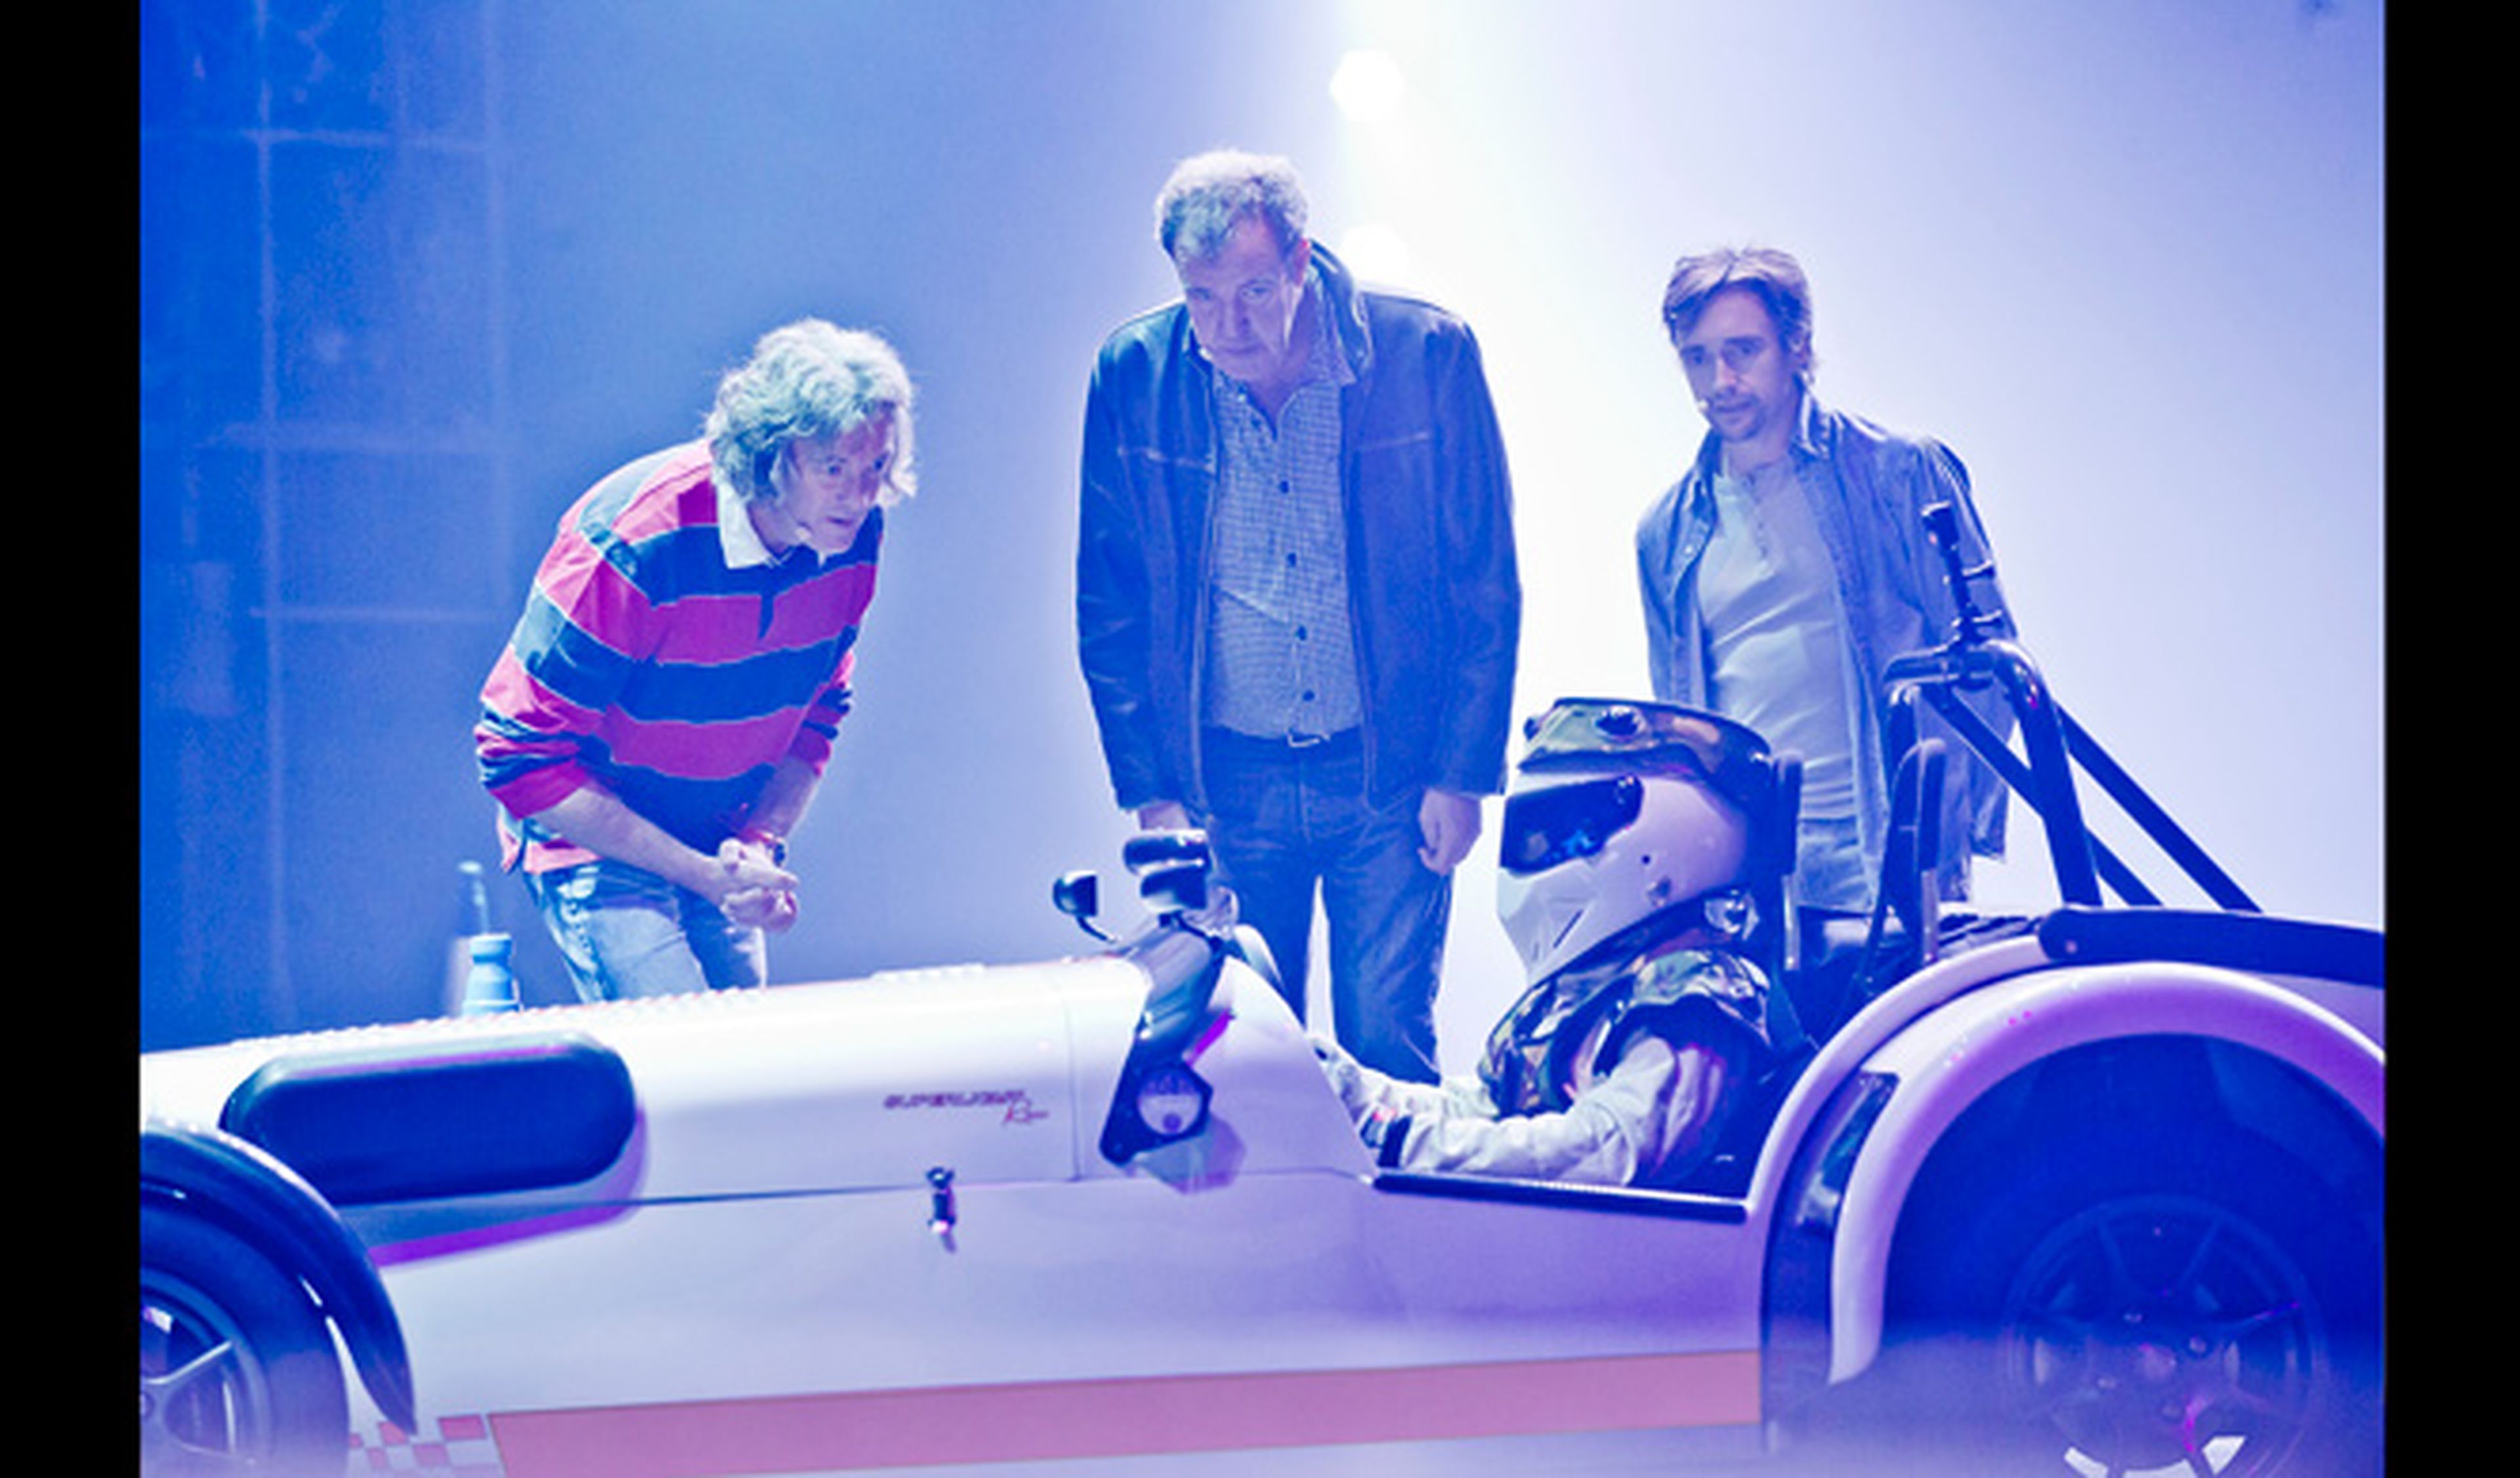 El programa Top Gear hará una gira en directo en 2015